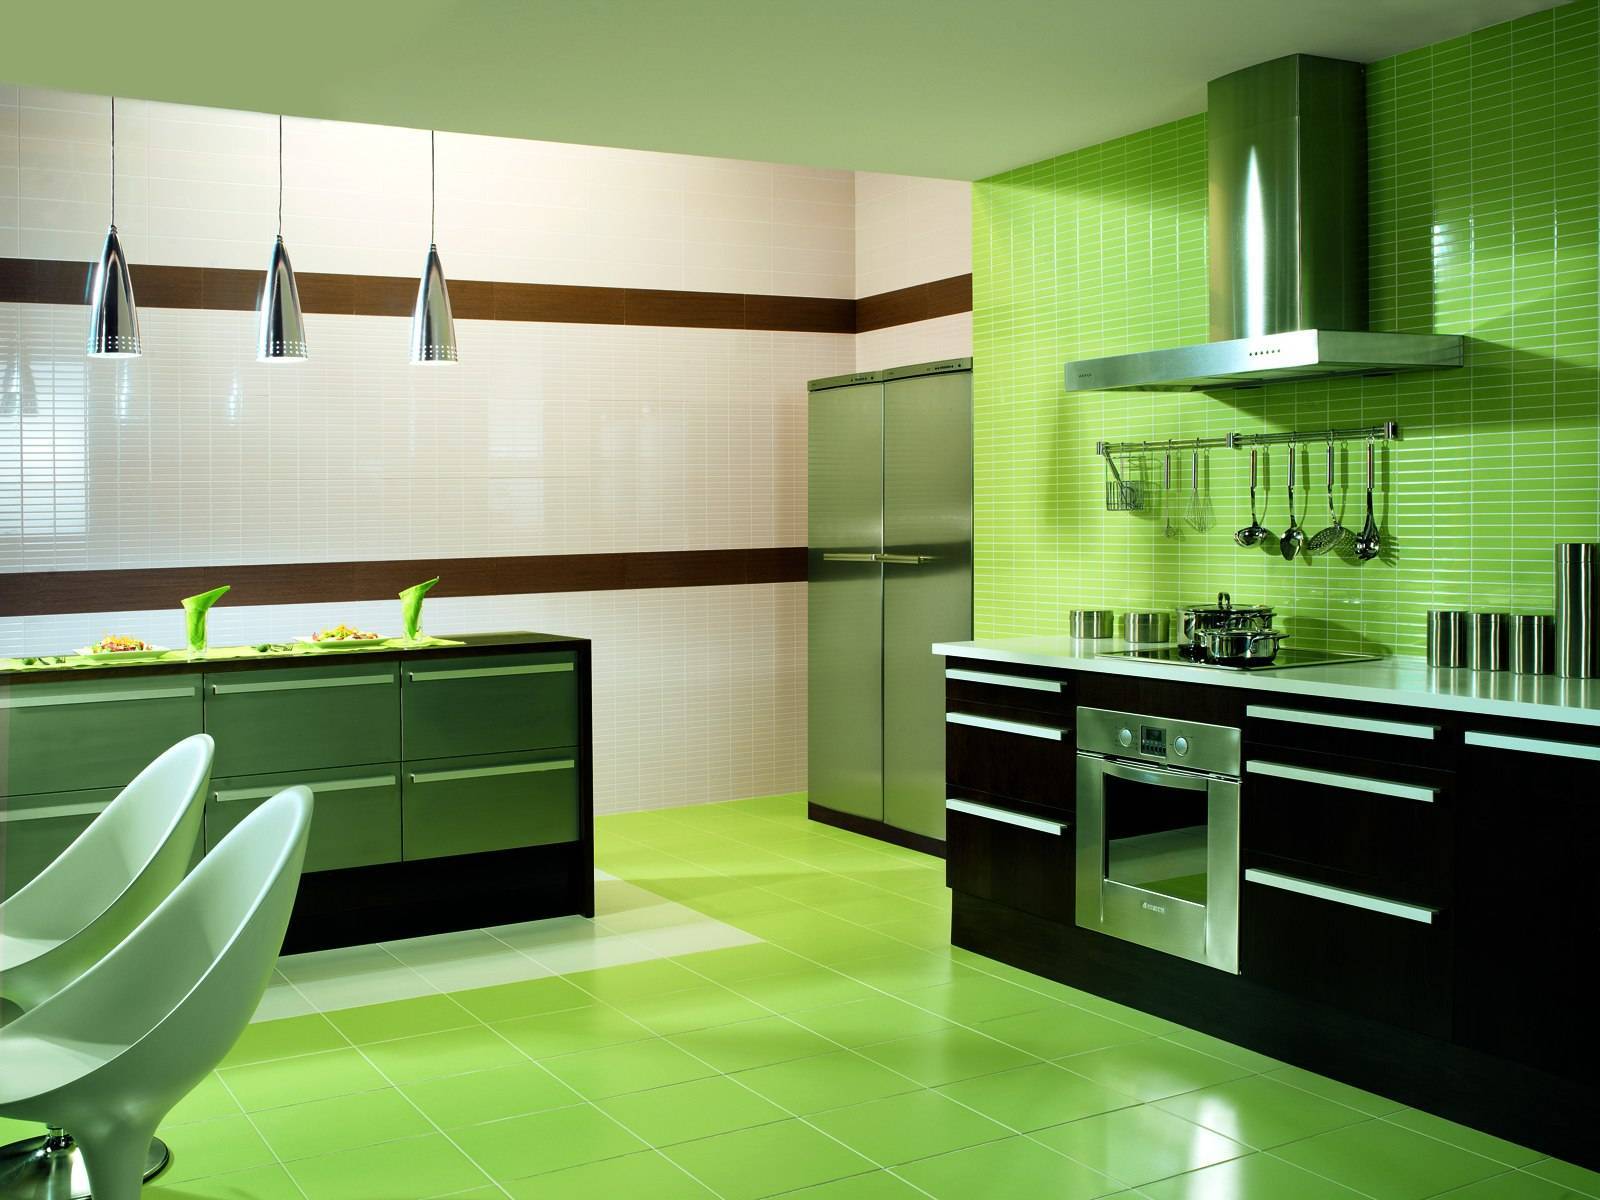 Салатовый цвет в интерьере кухни - 84 фото идеи красивого дизайнакухня — вкус комфорта